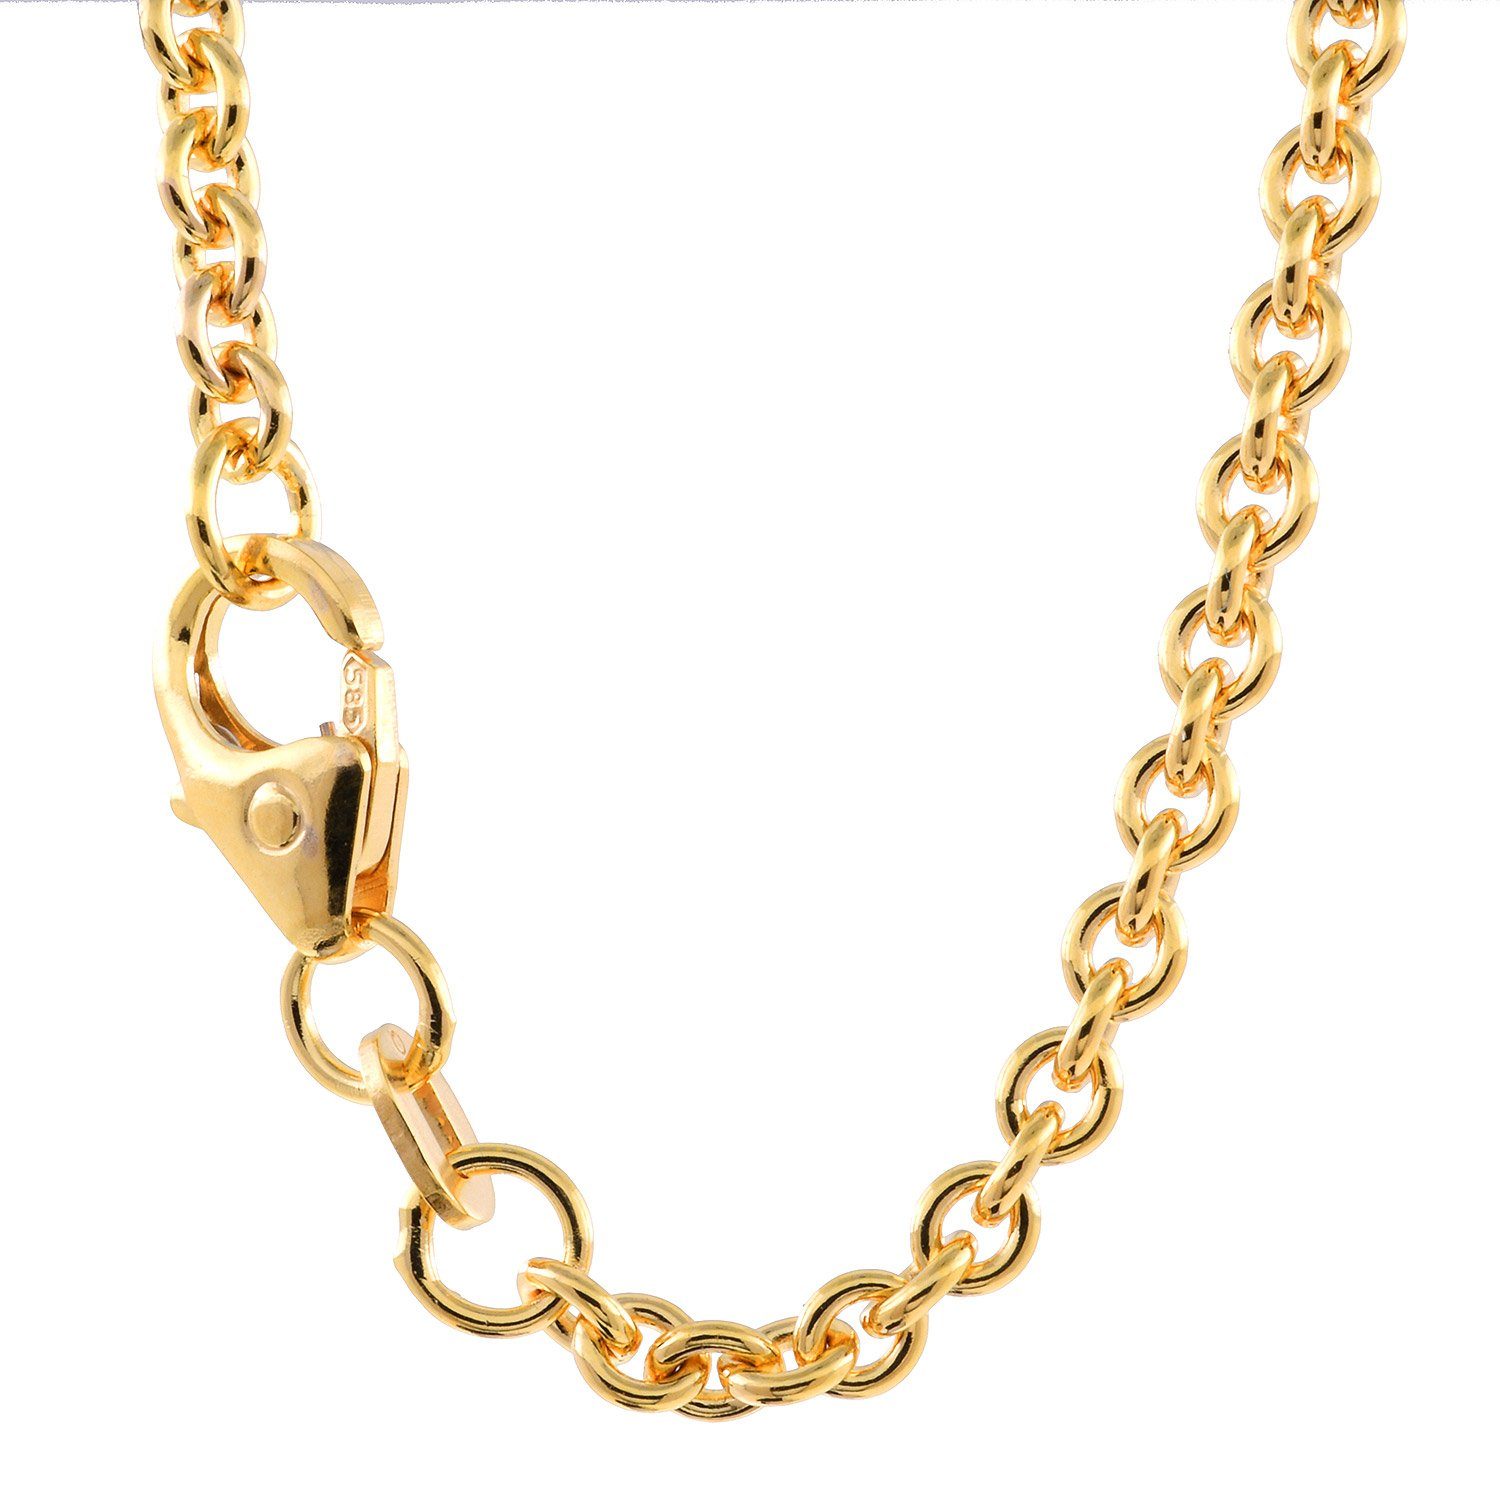 HOPLO Goldkette Ankerkette Halskette - Legierung 585 - 14 Karat Gold -  Kettenbreite 2,4 mm - Kettenlänge 42 cm, Made in Germany